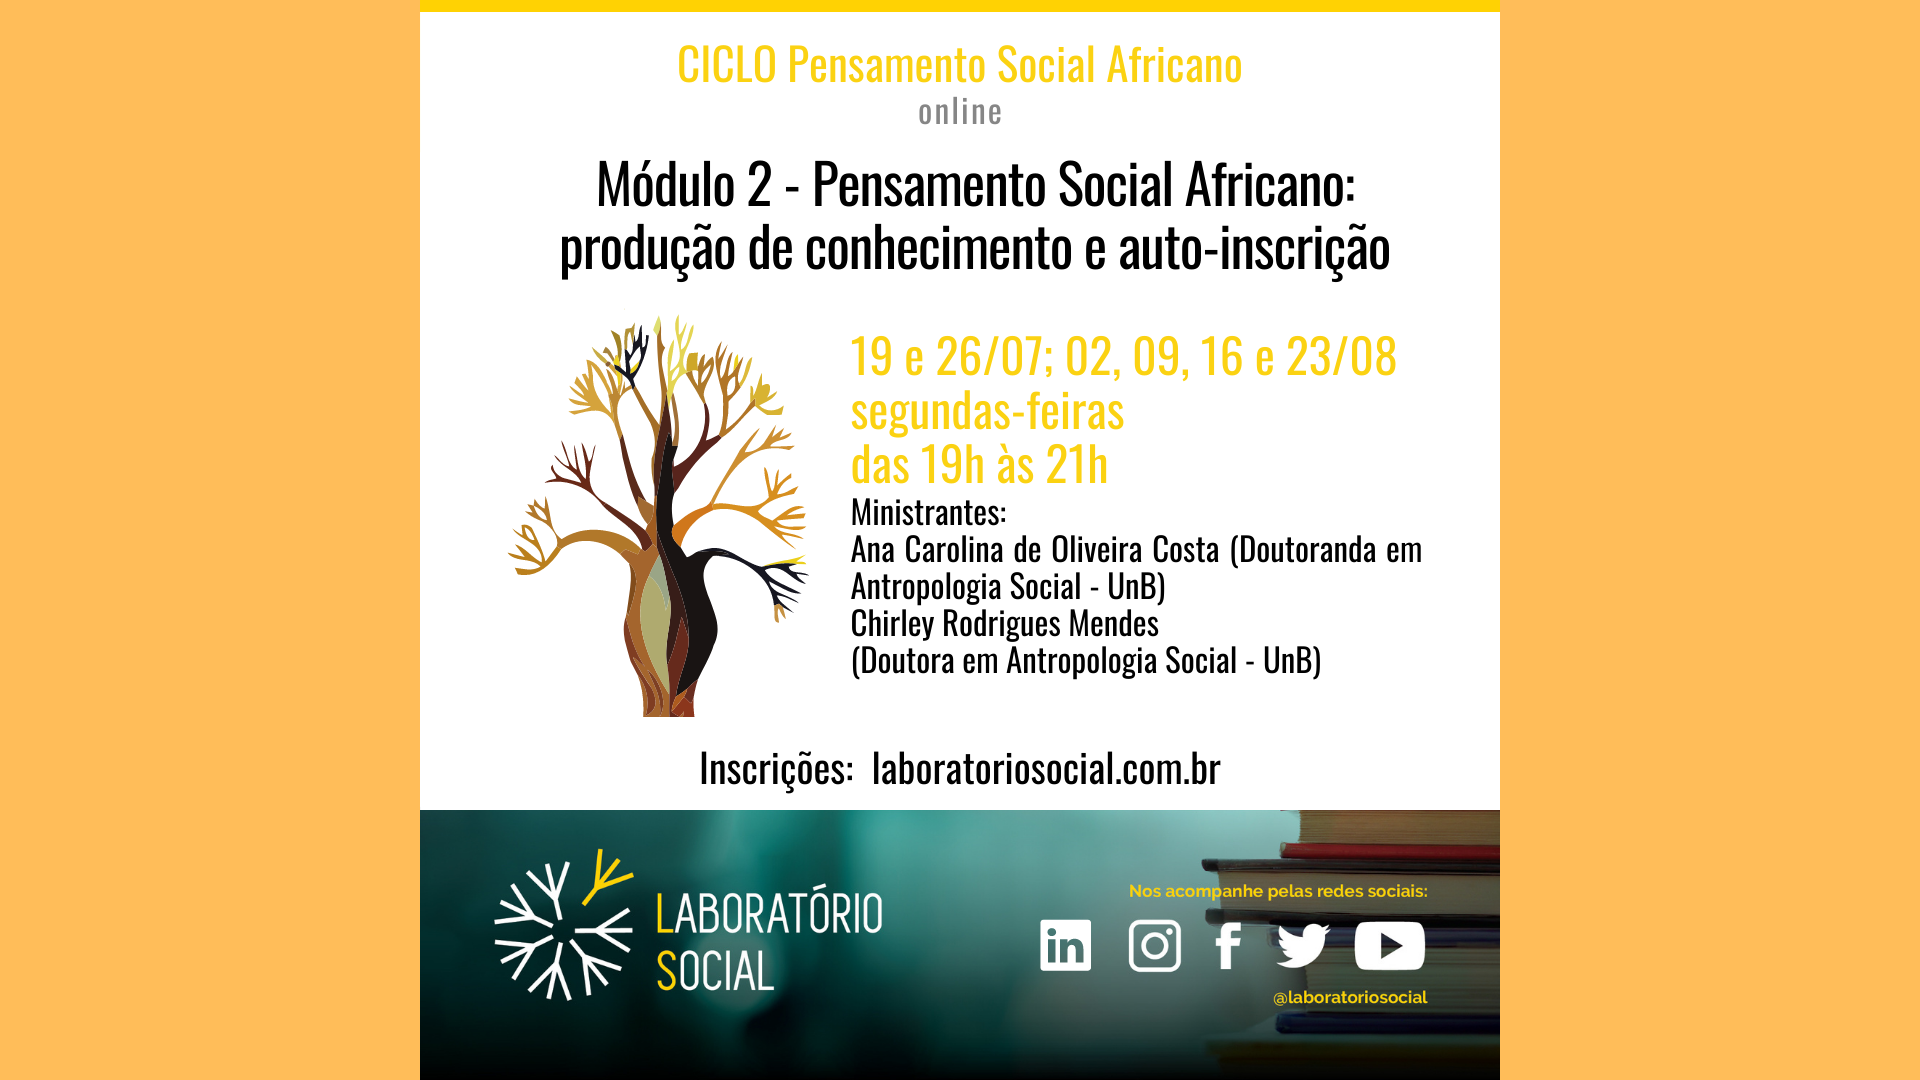 Módulo 2 (19/07 a 23/08) Pensamento Social Africano: produção de conhecimento e auto-inscrição